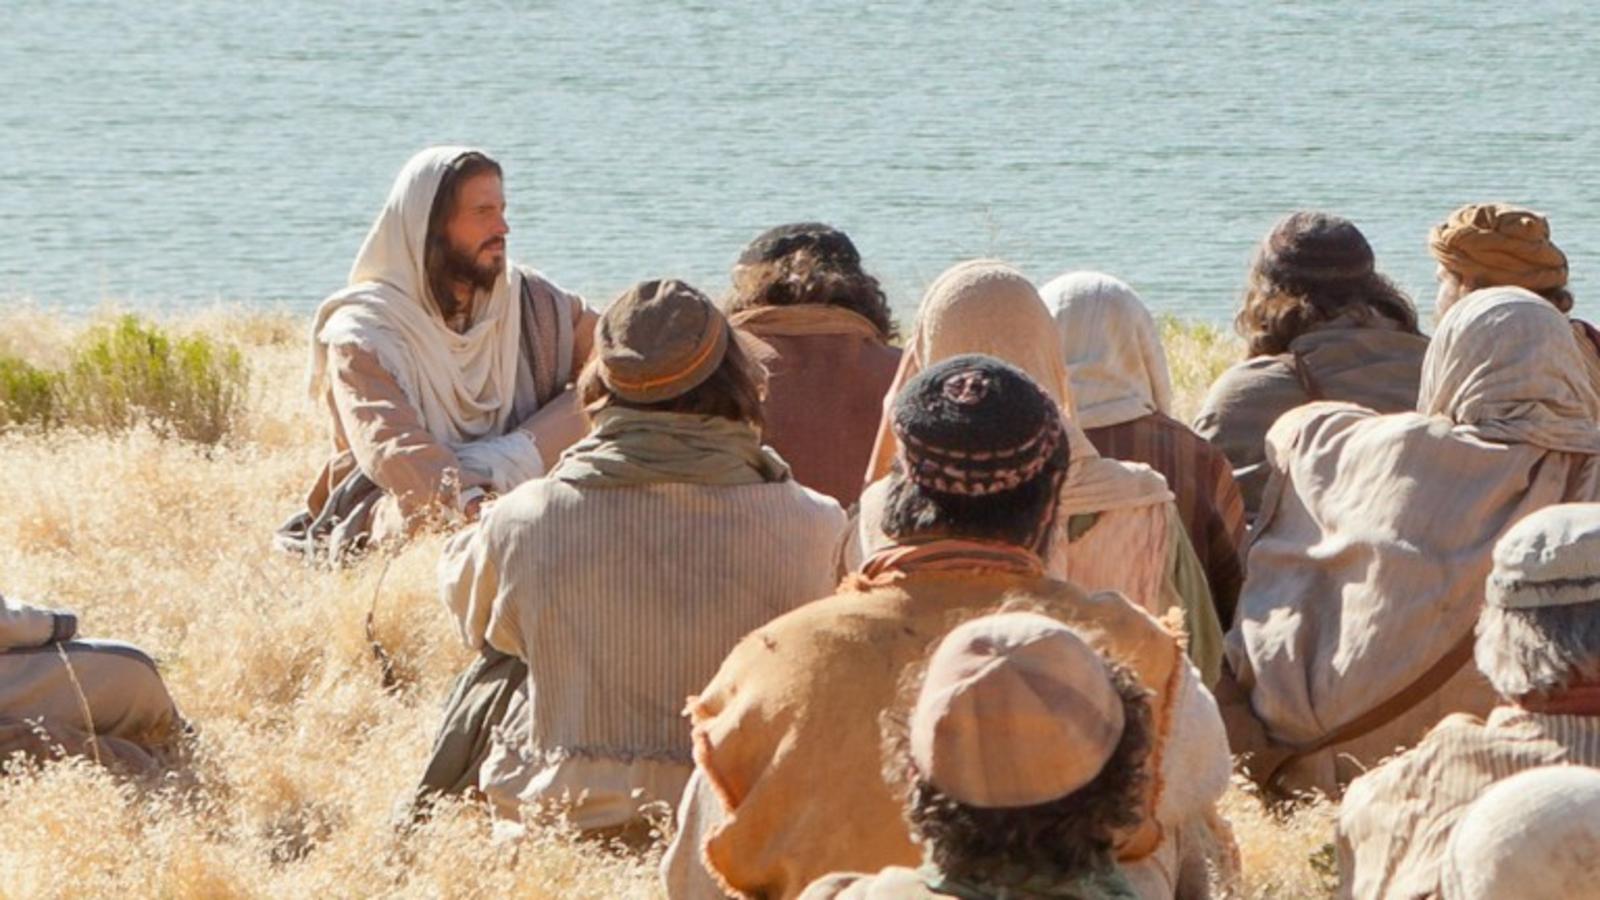 Listen to Jesus Talk About His Dad, Luke 11:1-13